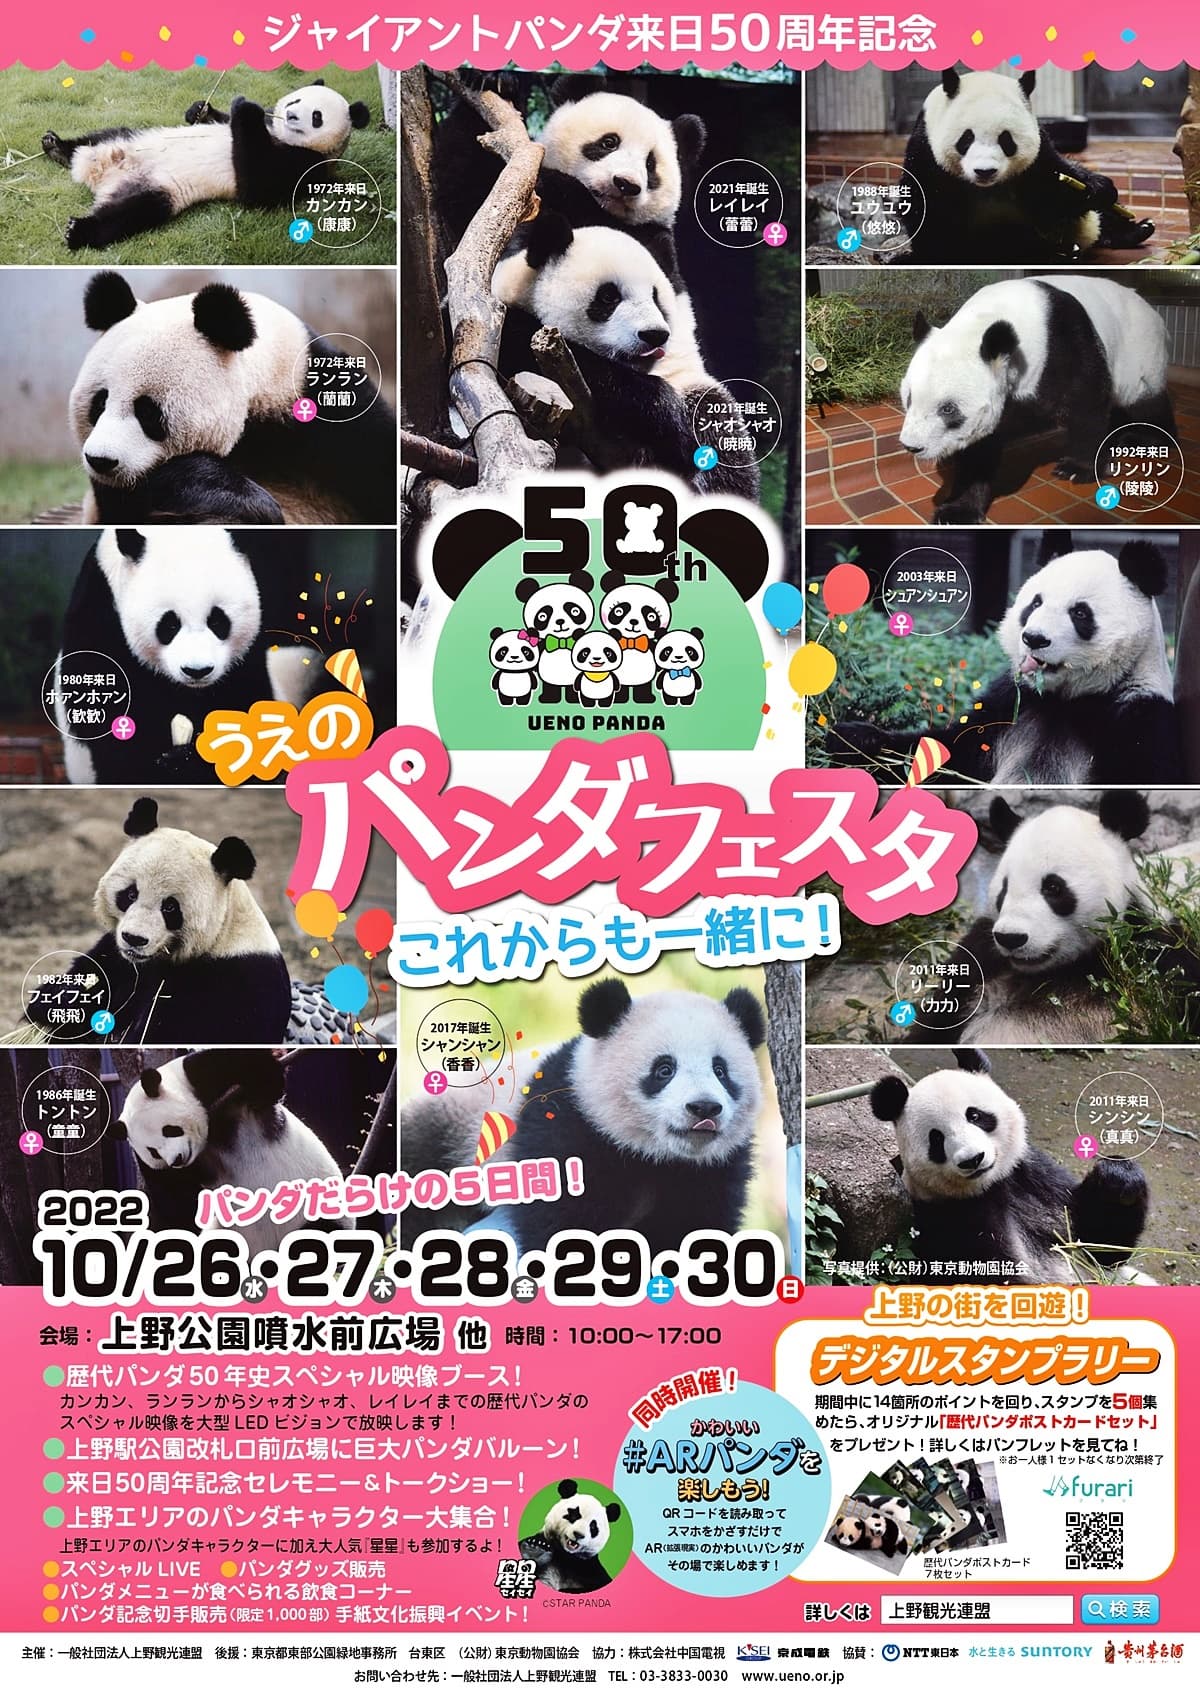 ARで手のりパンダなどが楽しめるイベント「うえのパンダフェスタ」が上野公園で開催